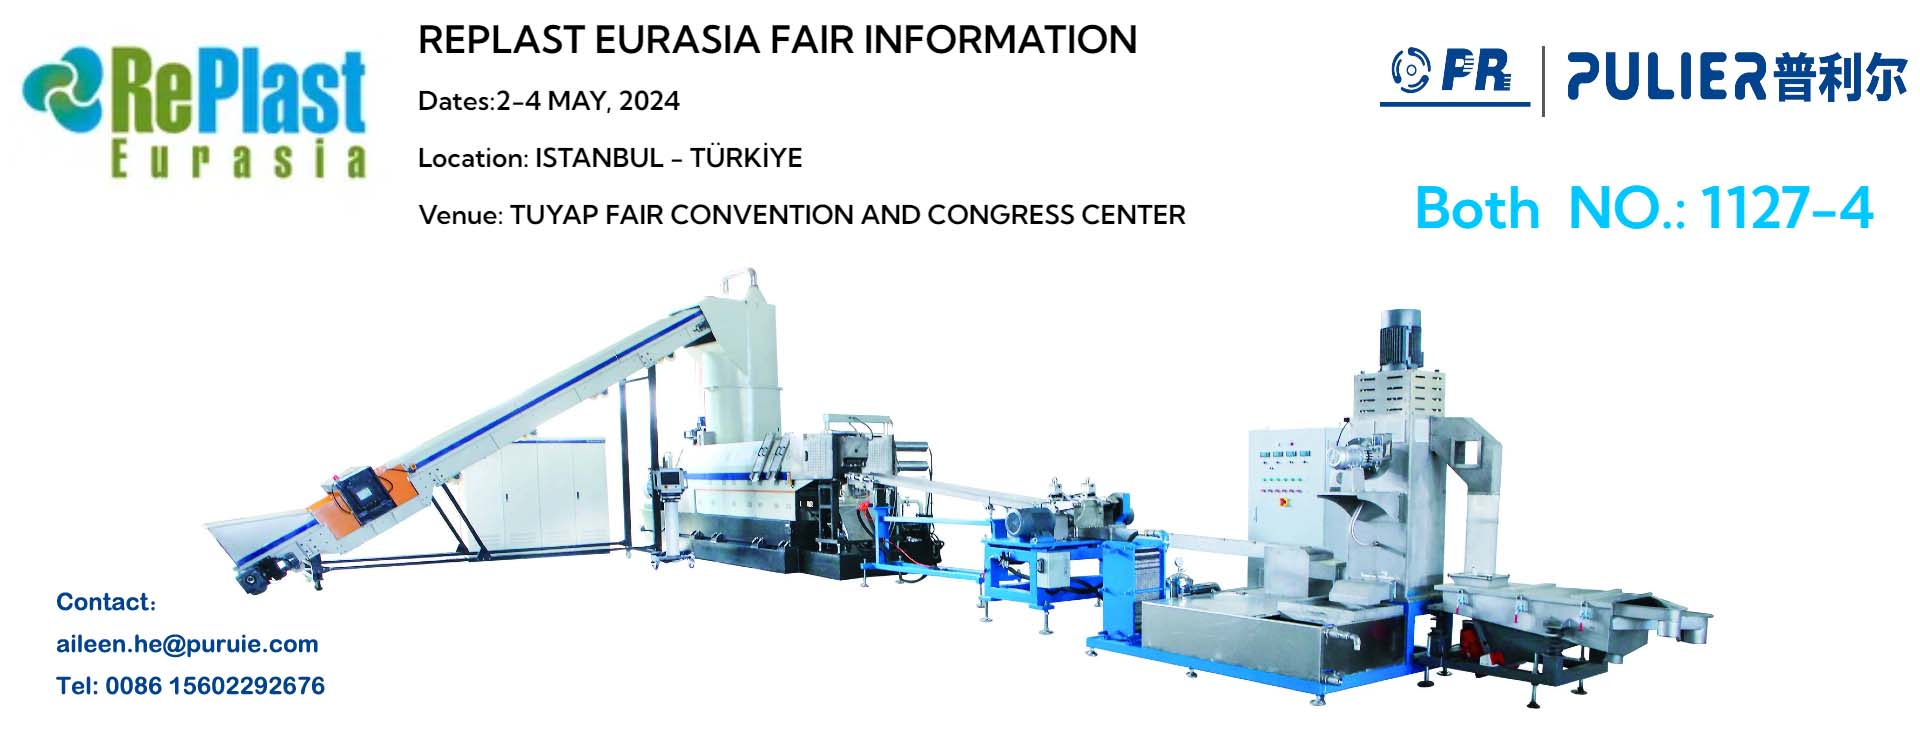 Feria RePlast Eurasia en Estambul Turquía